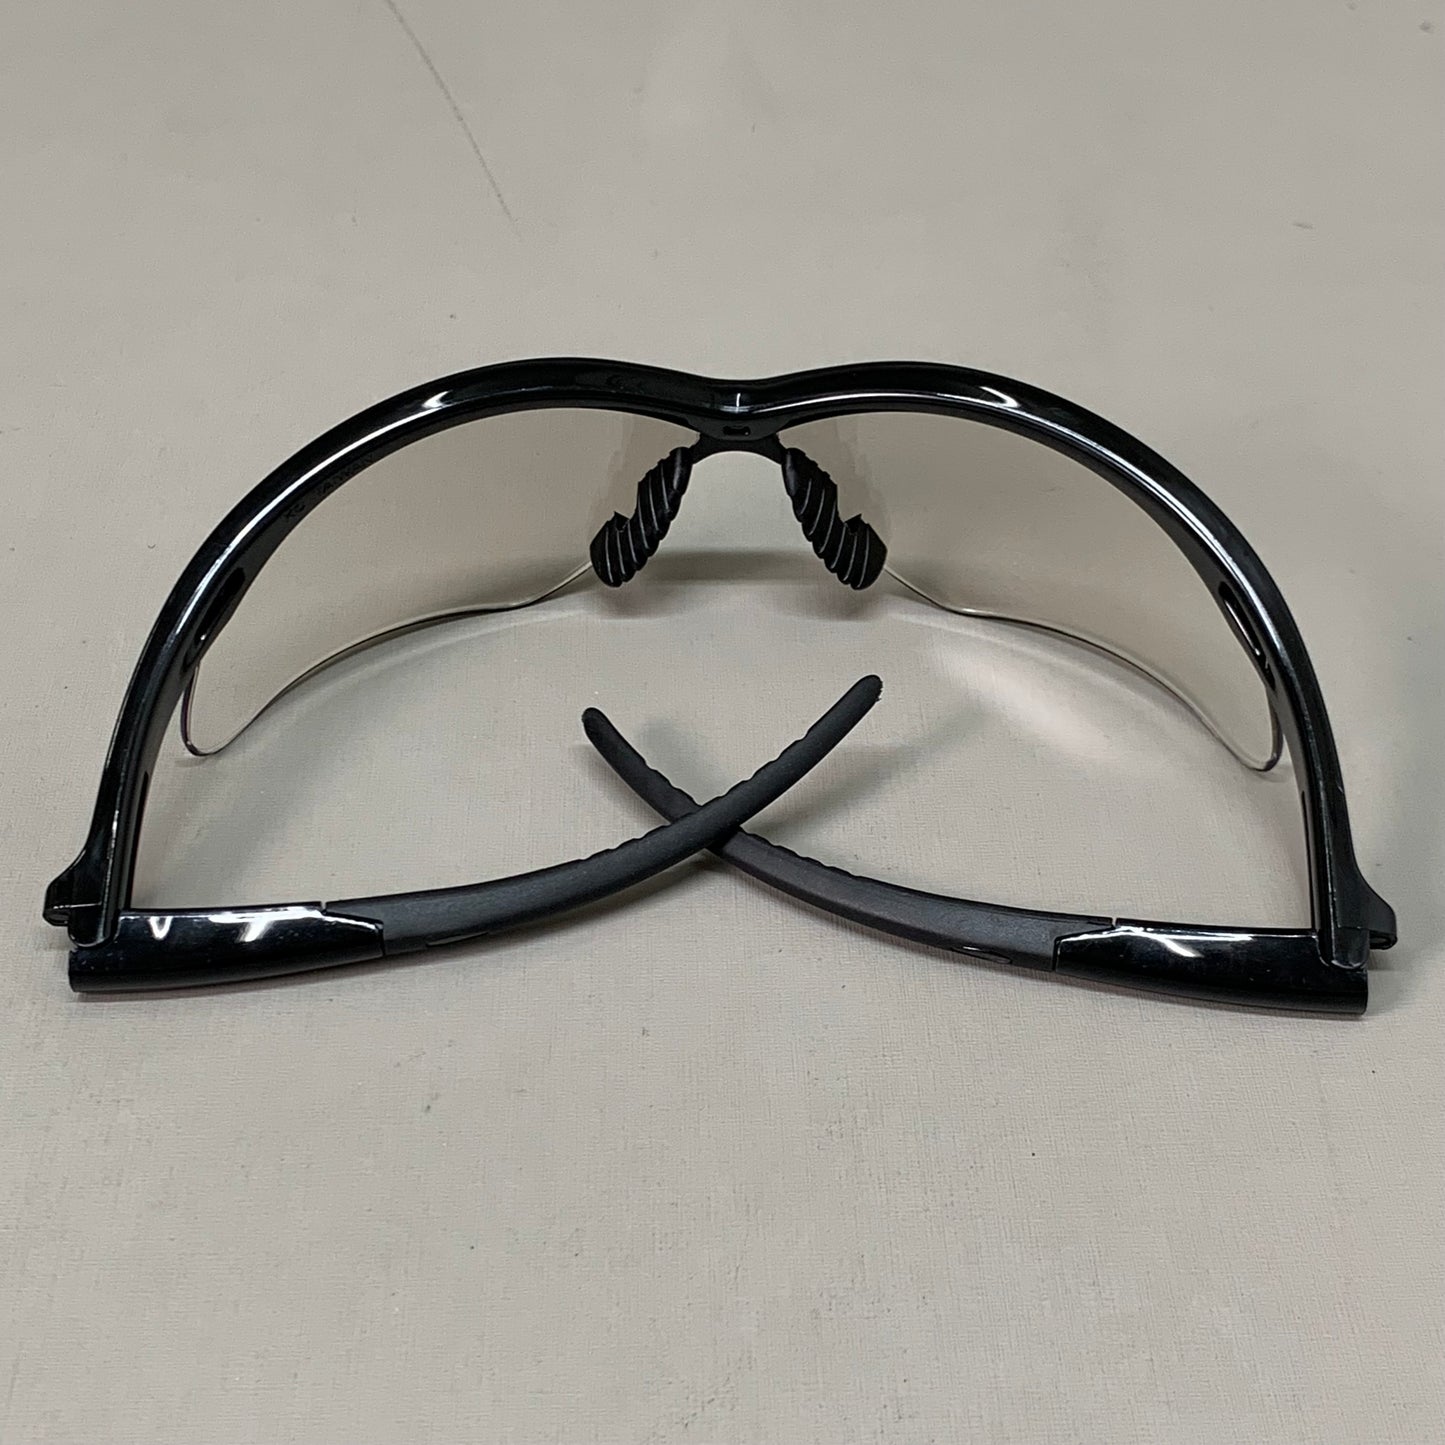 KLEENGUARD (6-PACK!) Nemesis Safety Glasses Indoor/Outdoor Lenses 6" Black 25685